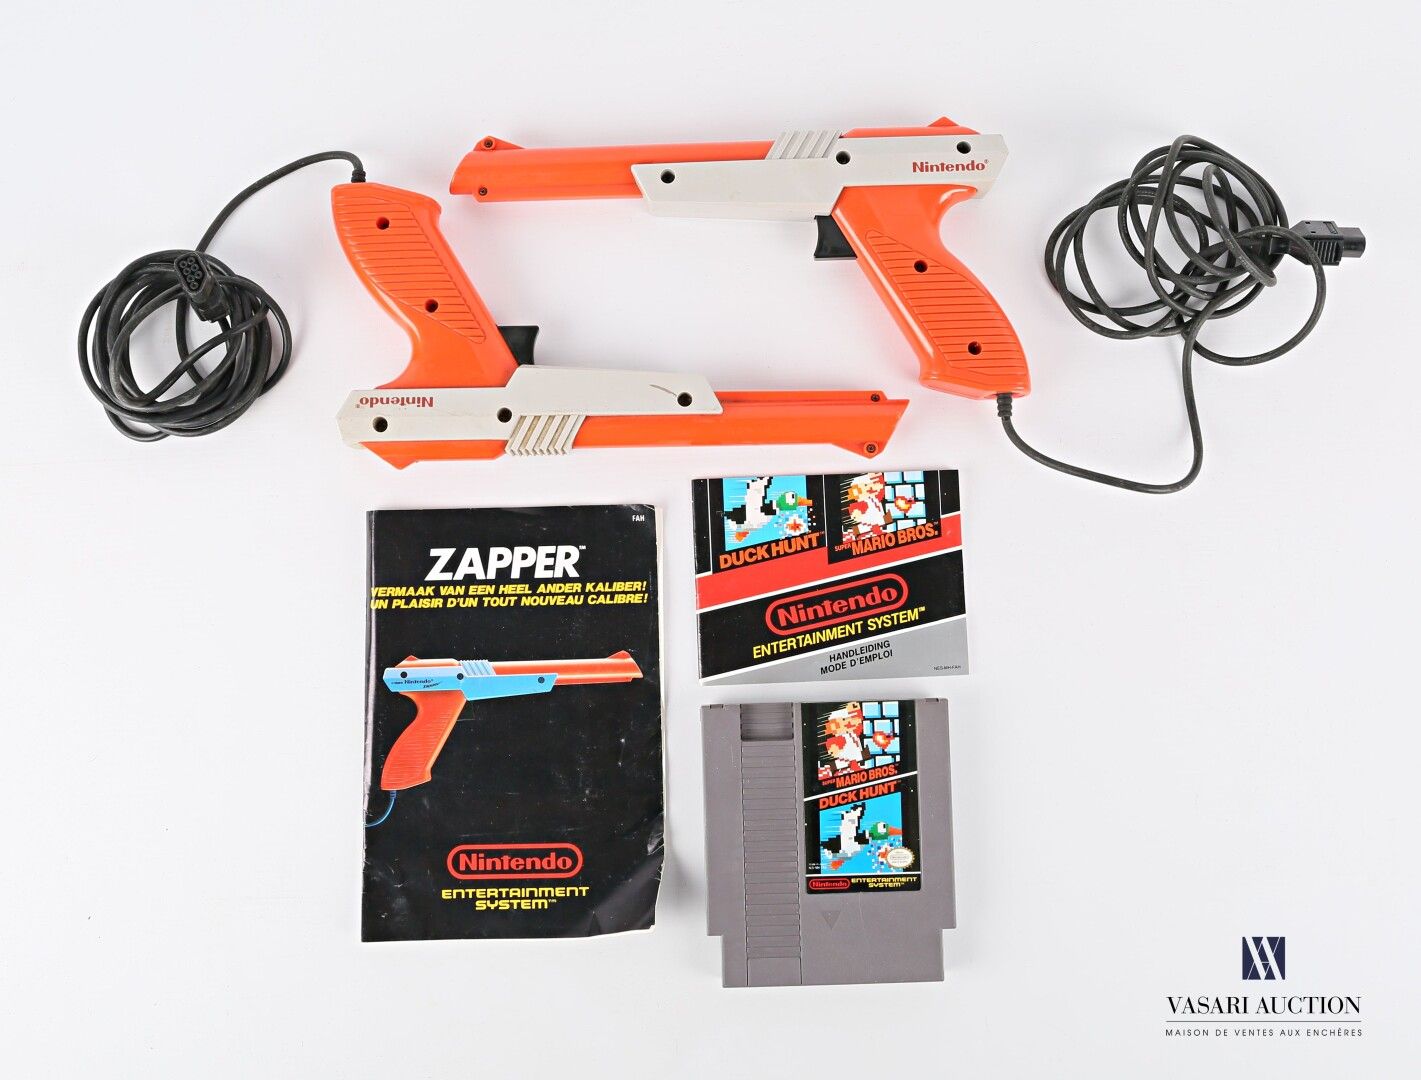 Null 钮恩迪

视频游戏 "猎鸭，超级马里奥兄弟 "和它的两个 "Zapper"。

(磨损、污渍、说明、功能)